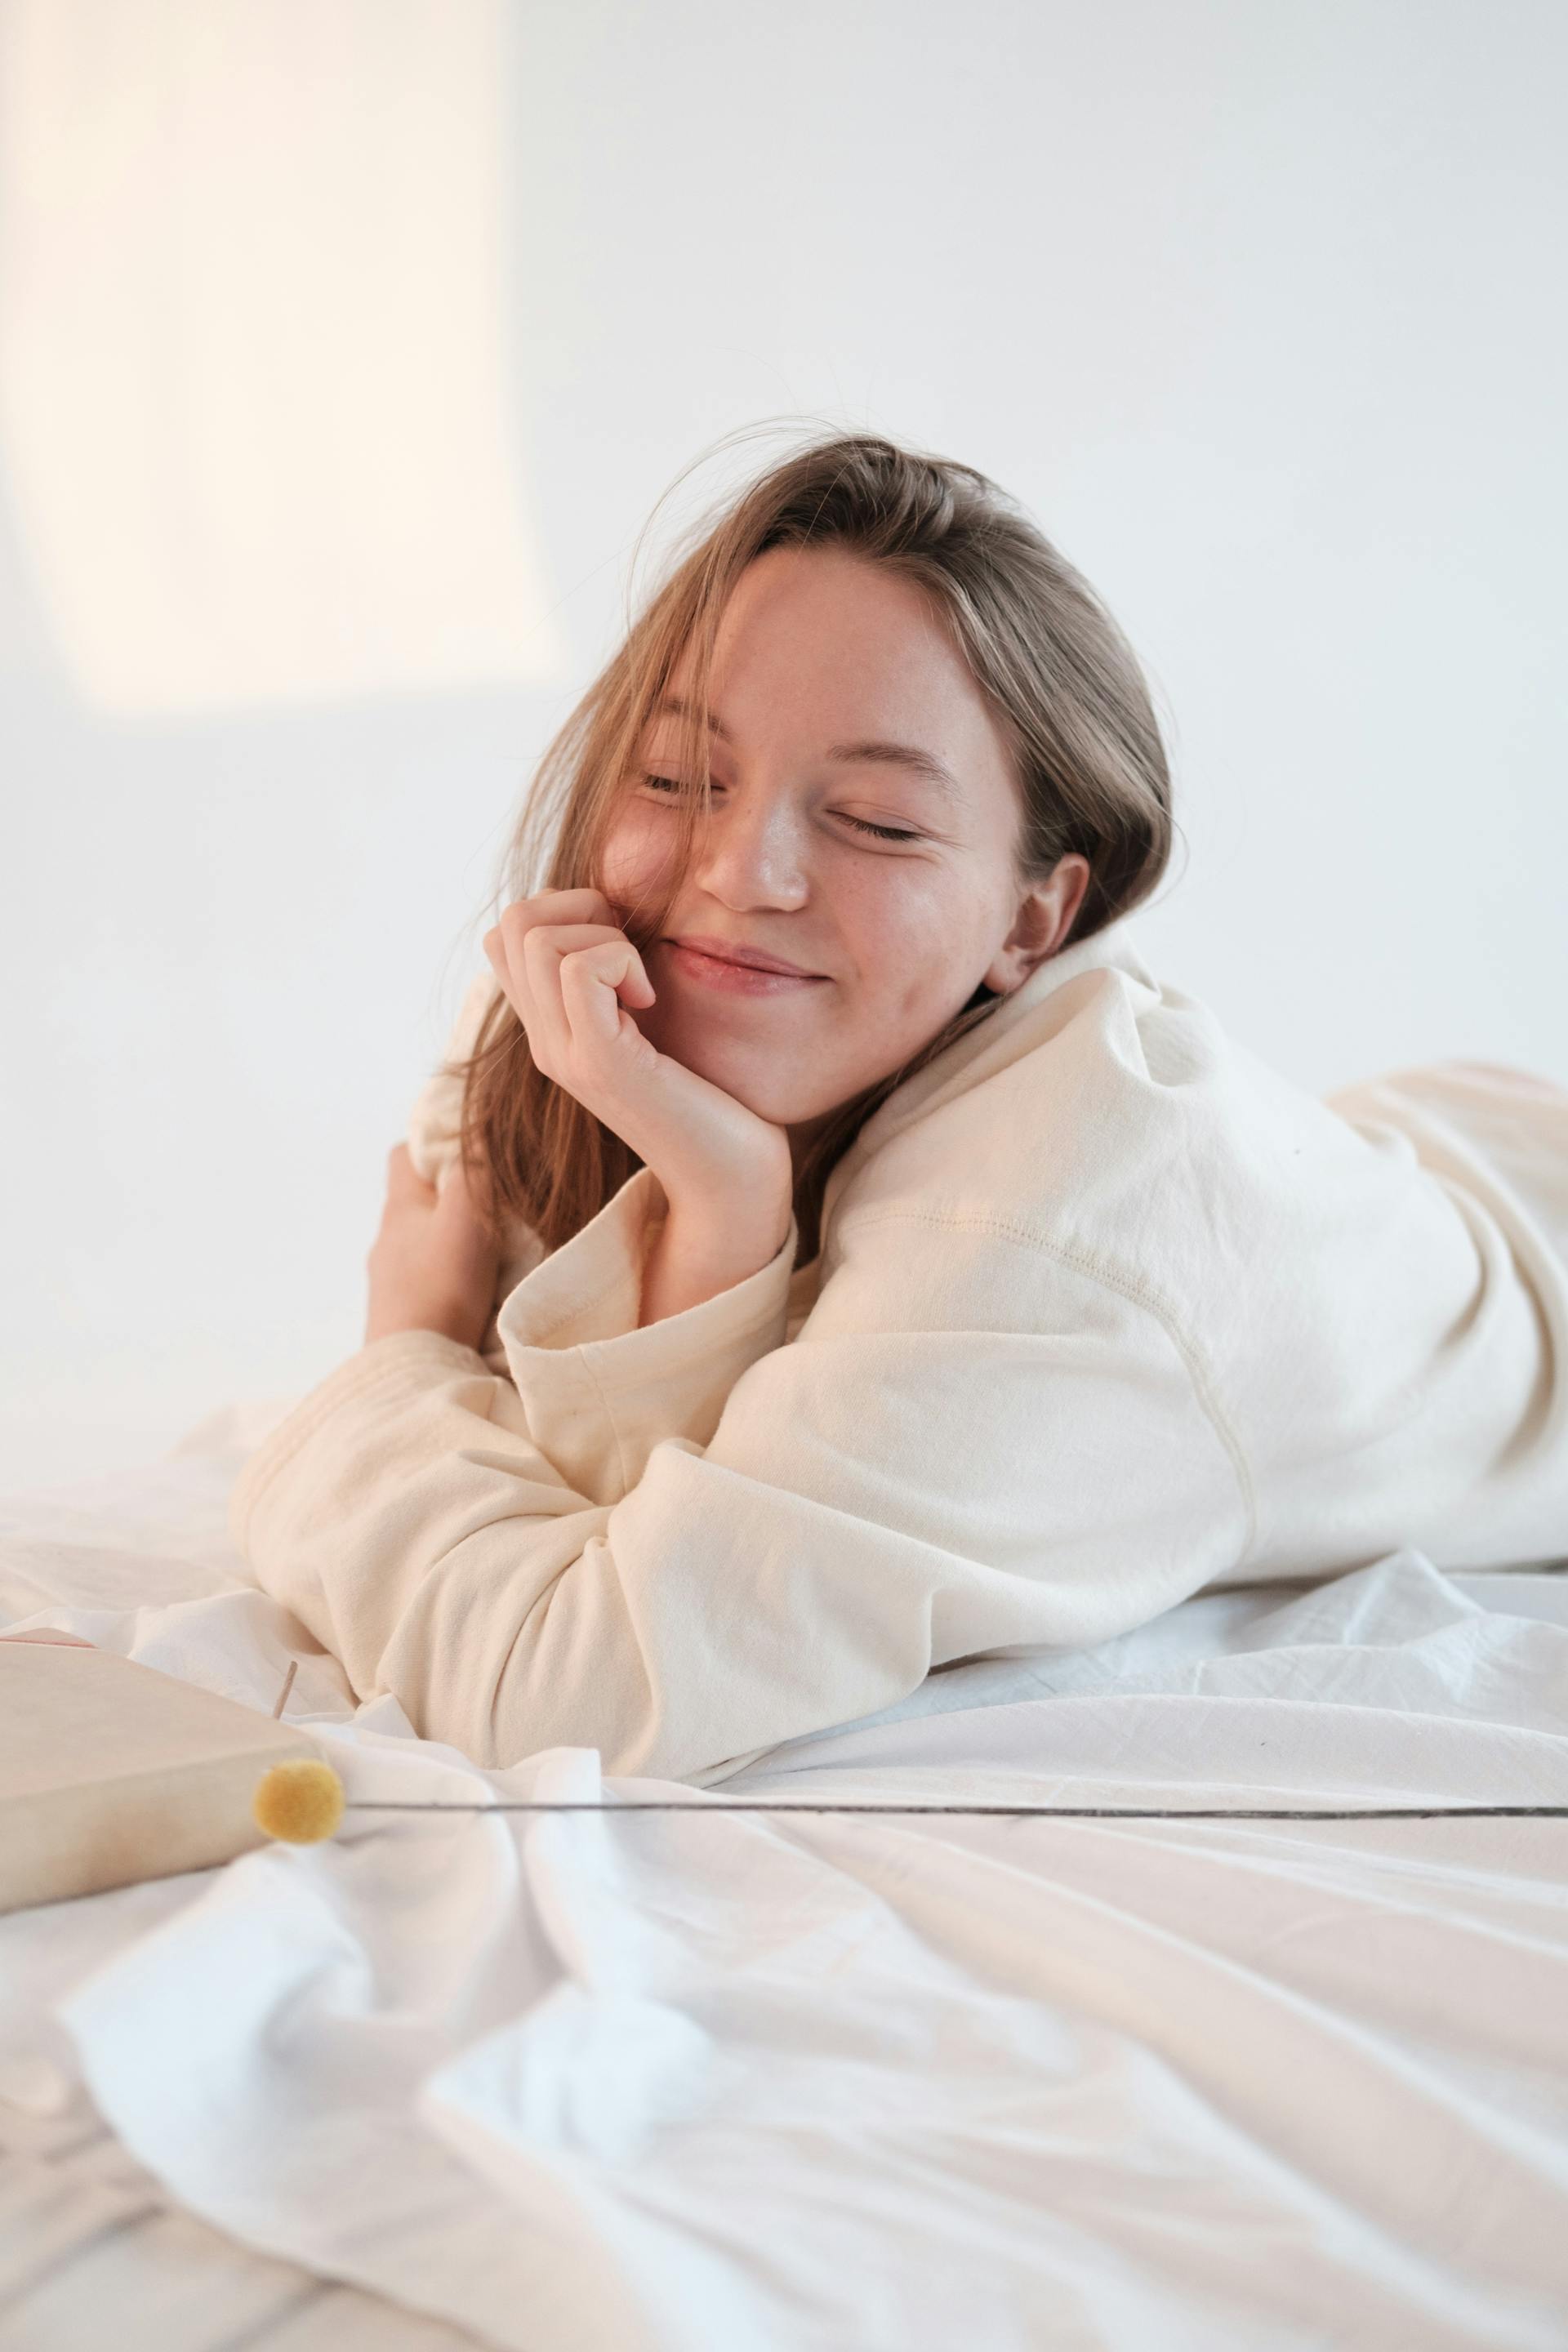 Eine lächelnde Frau, die sich mit geschlossenen Augen im Bett ausruht | Quelle: Pexels